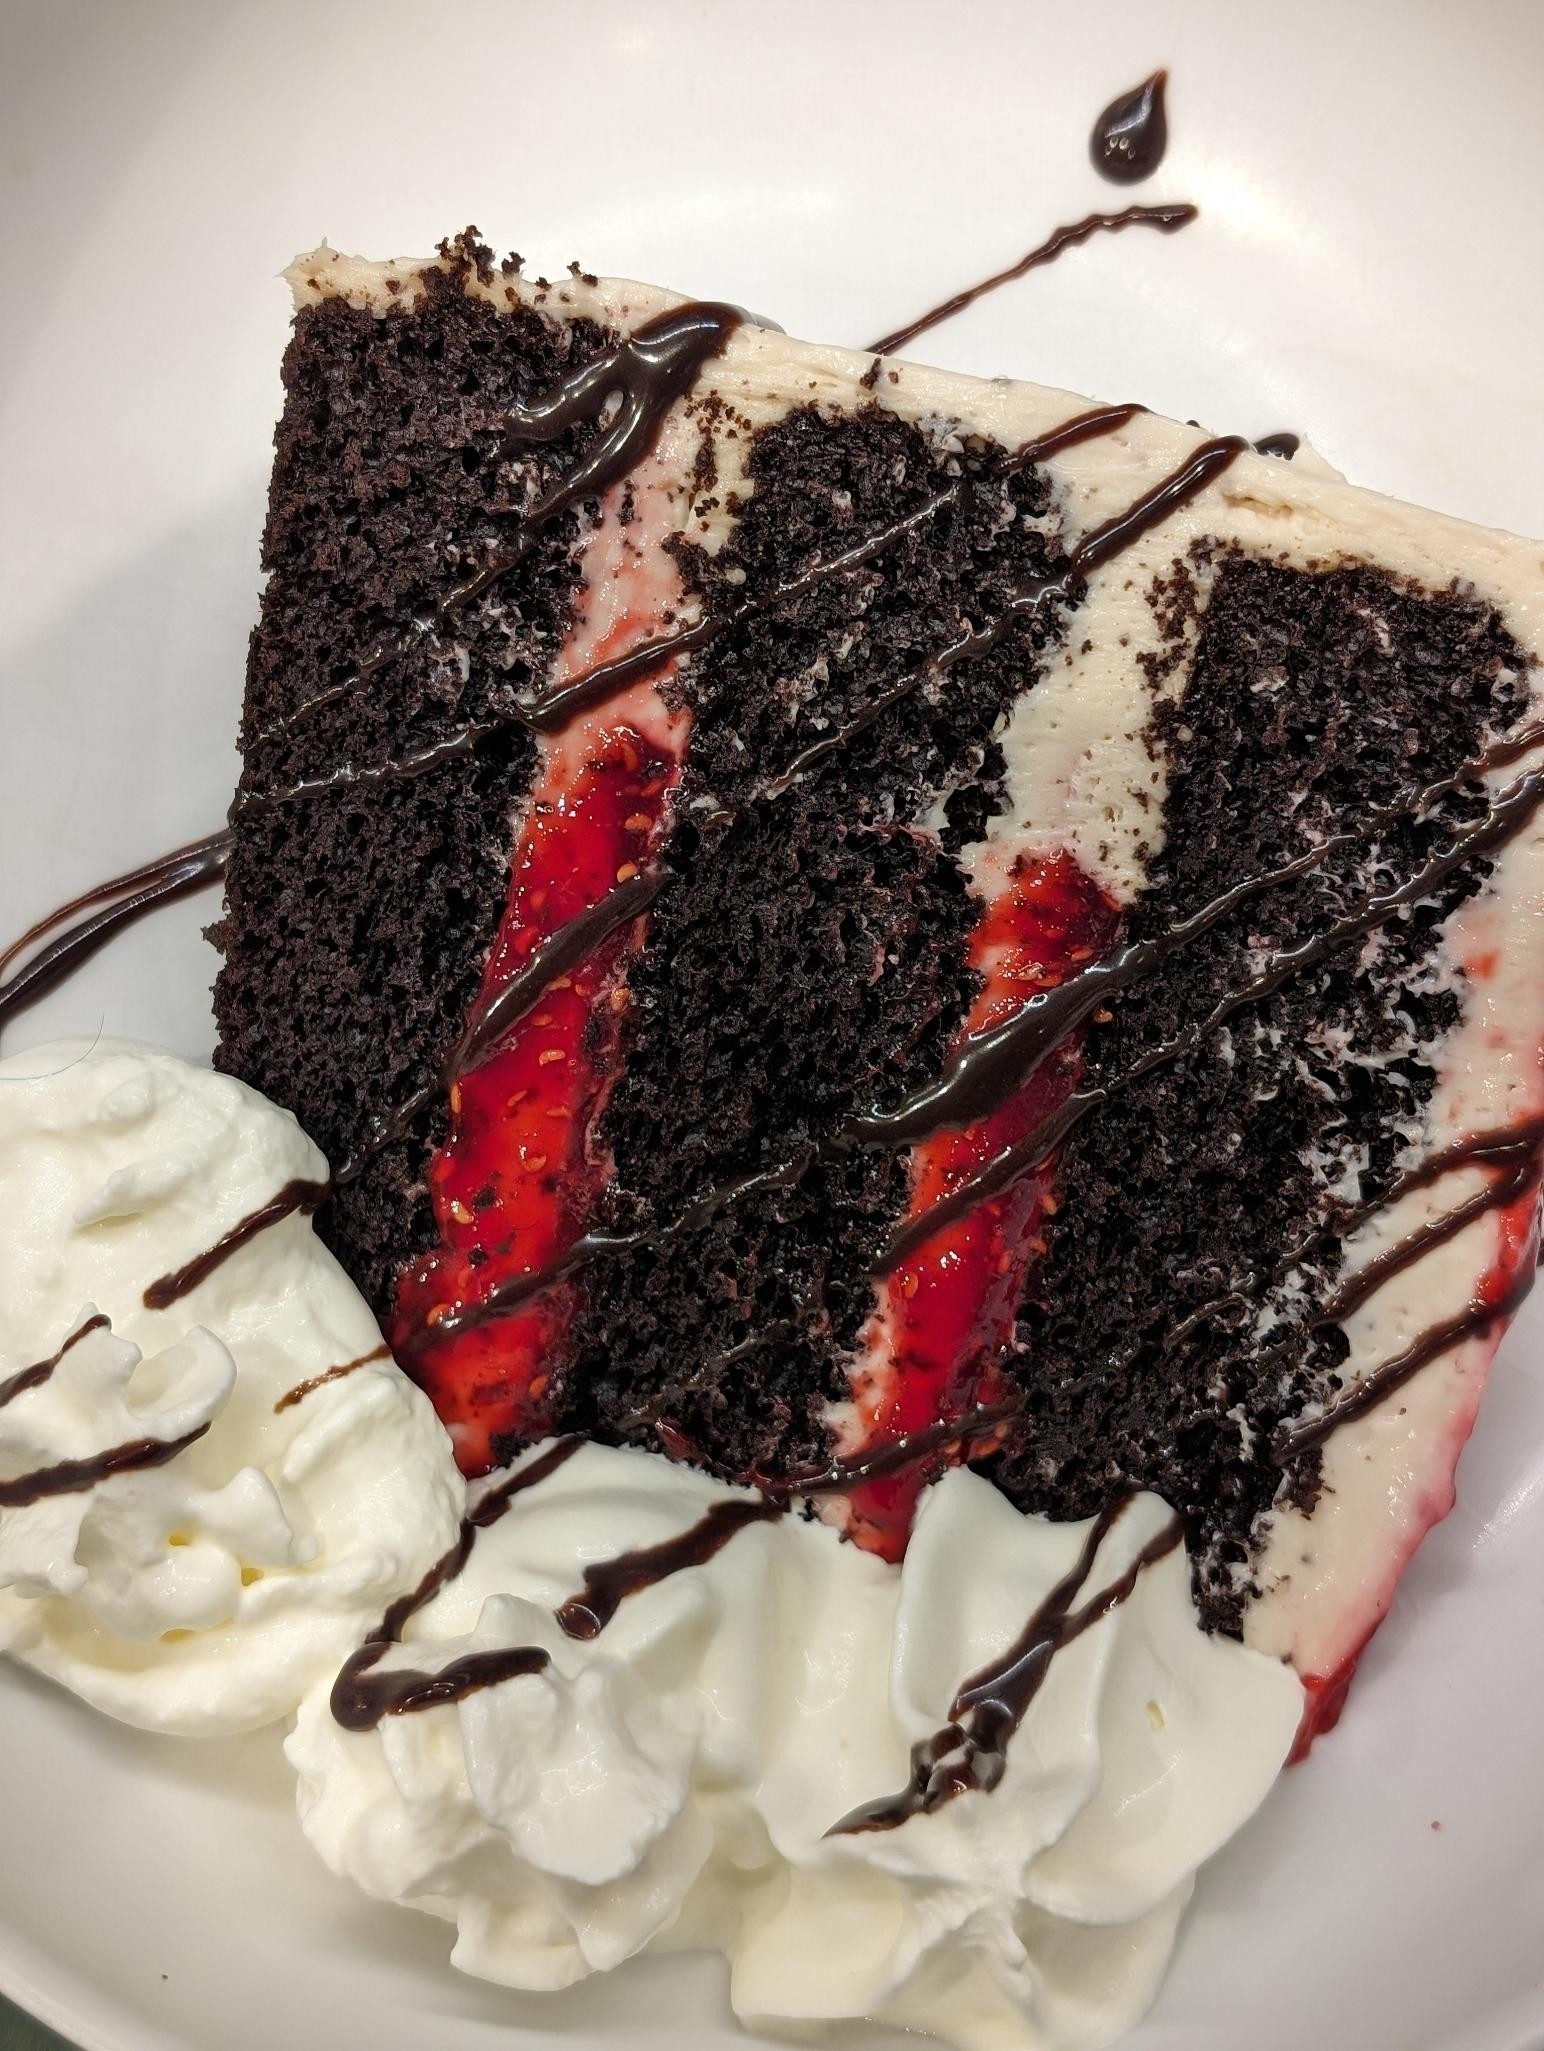 Raspberries & Cream Chocolate Cake